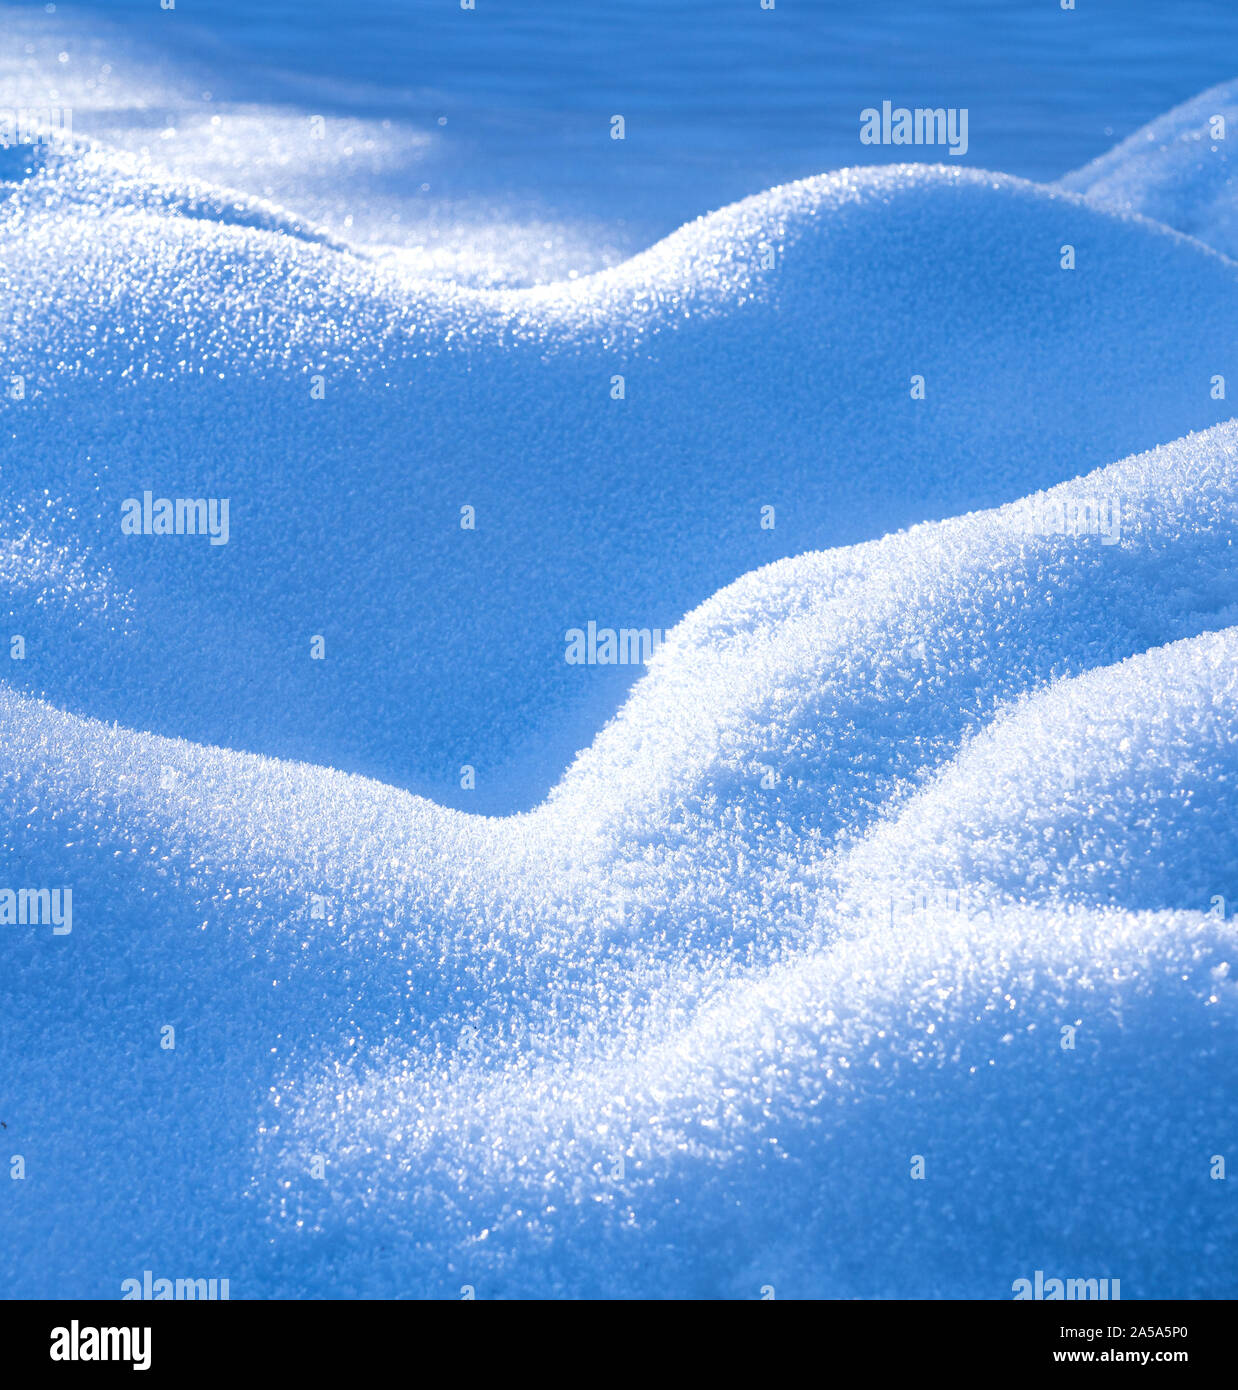 Una vista astratta su una struttura ondulata generata dal vento sulla neve con ghiaccio crysals visble sulla superficie Foto Stock